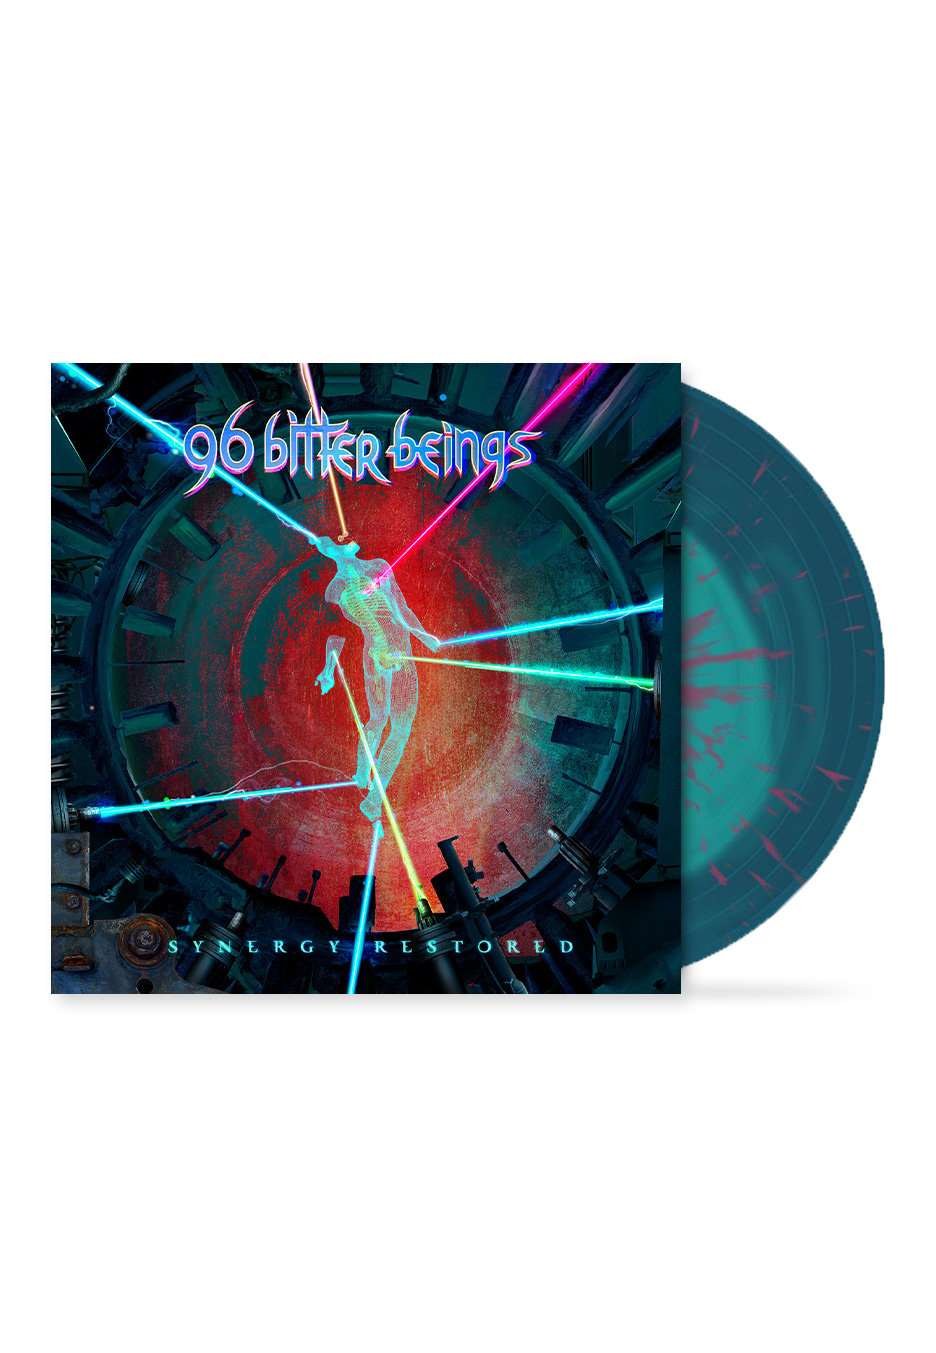 96 Bitter Beings - Synergy Restored Ltd. Green in Blue/Pink - Splattered Vinyl